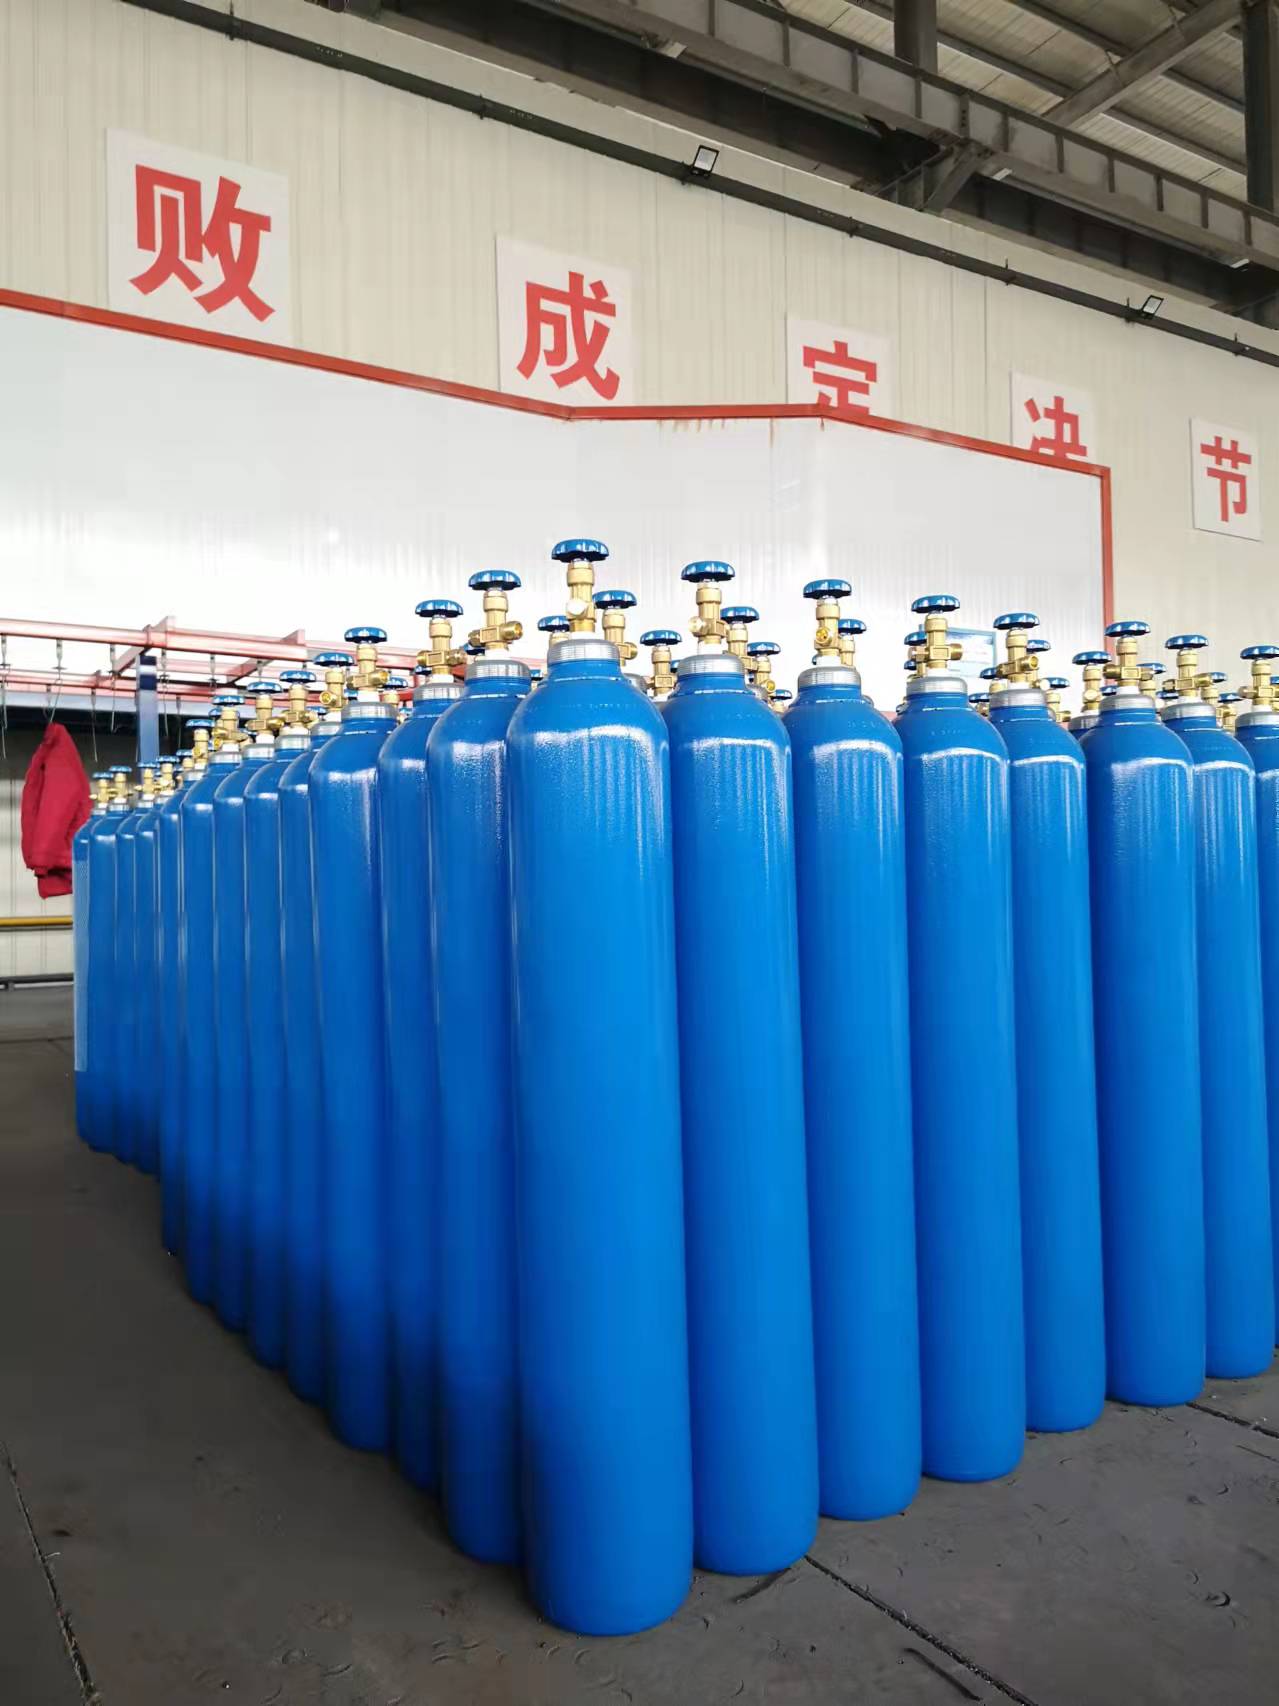 国标无缝气瓶 铁岭钢瓶生产厂家 山东广承压力容器有限公司